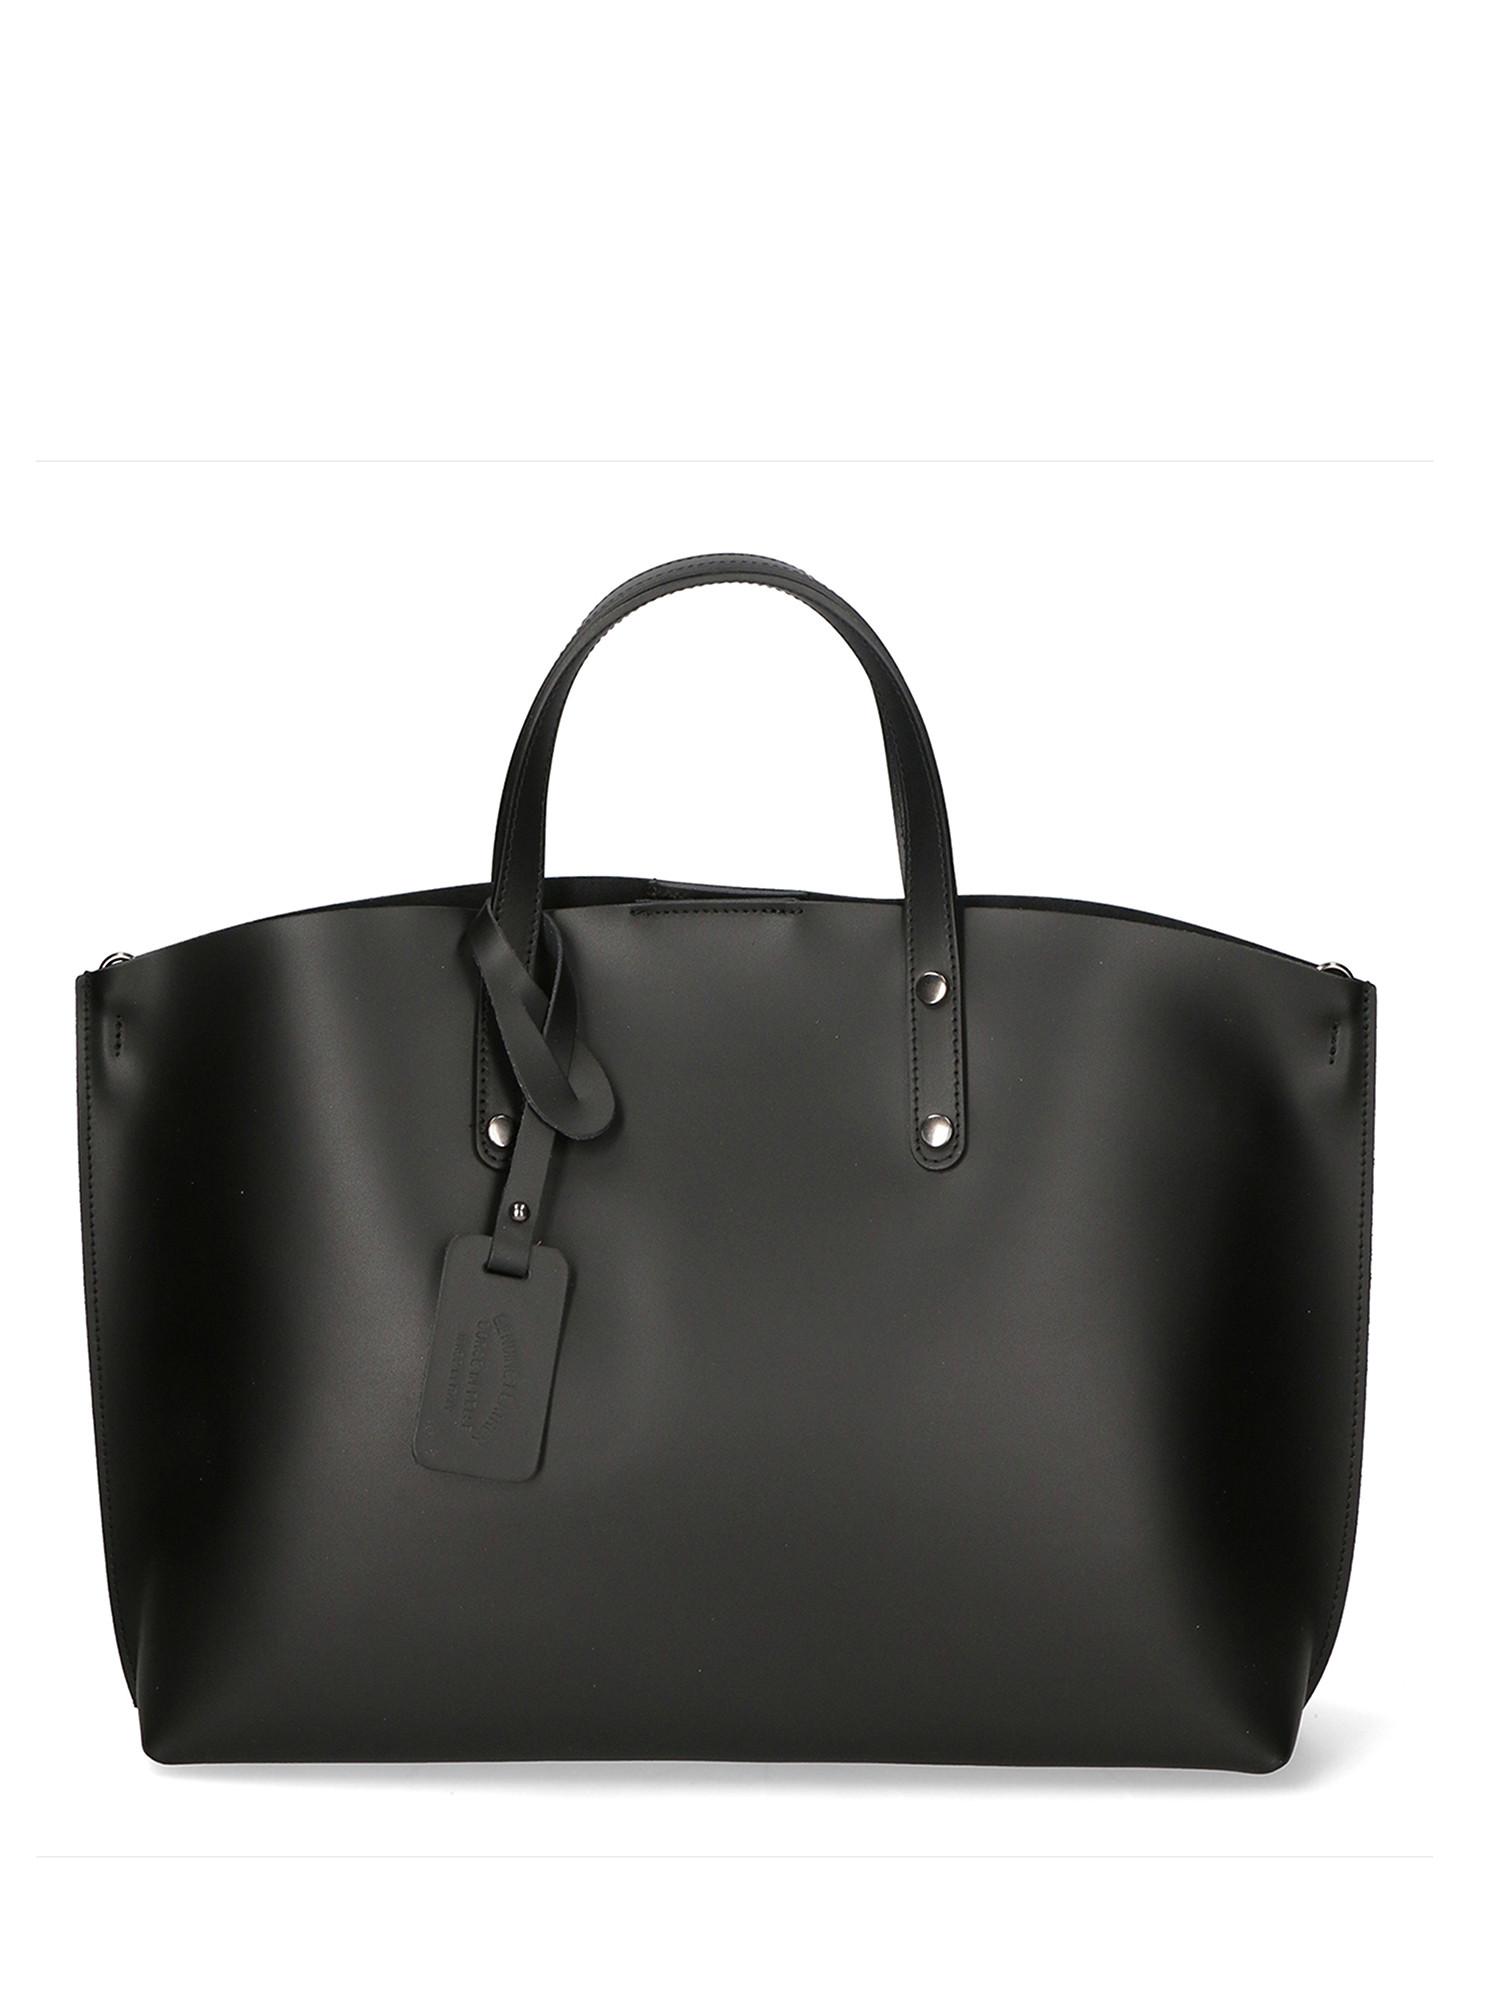 Handtasche Damen Schwarz ONE SIZE von Gave Lux